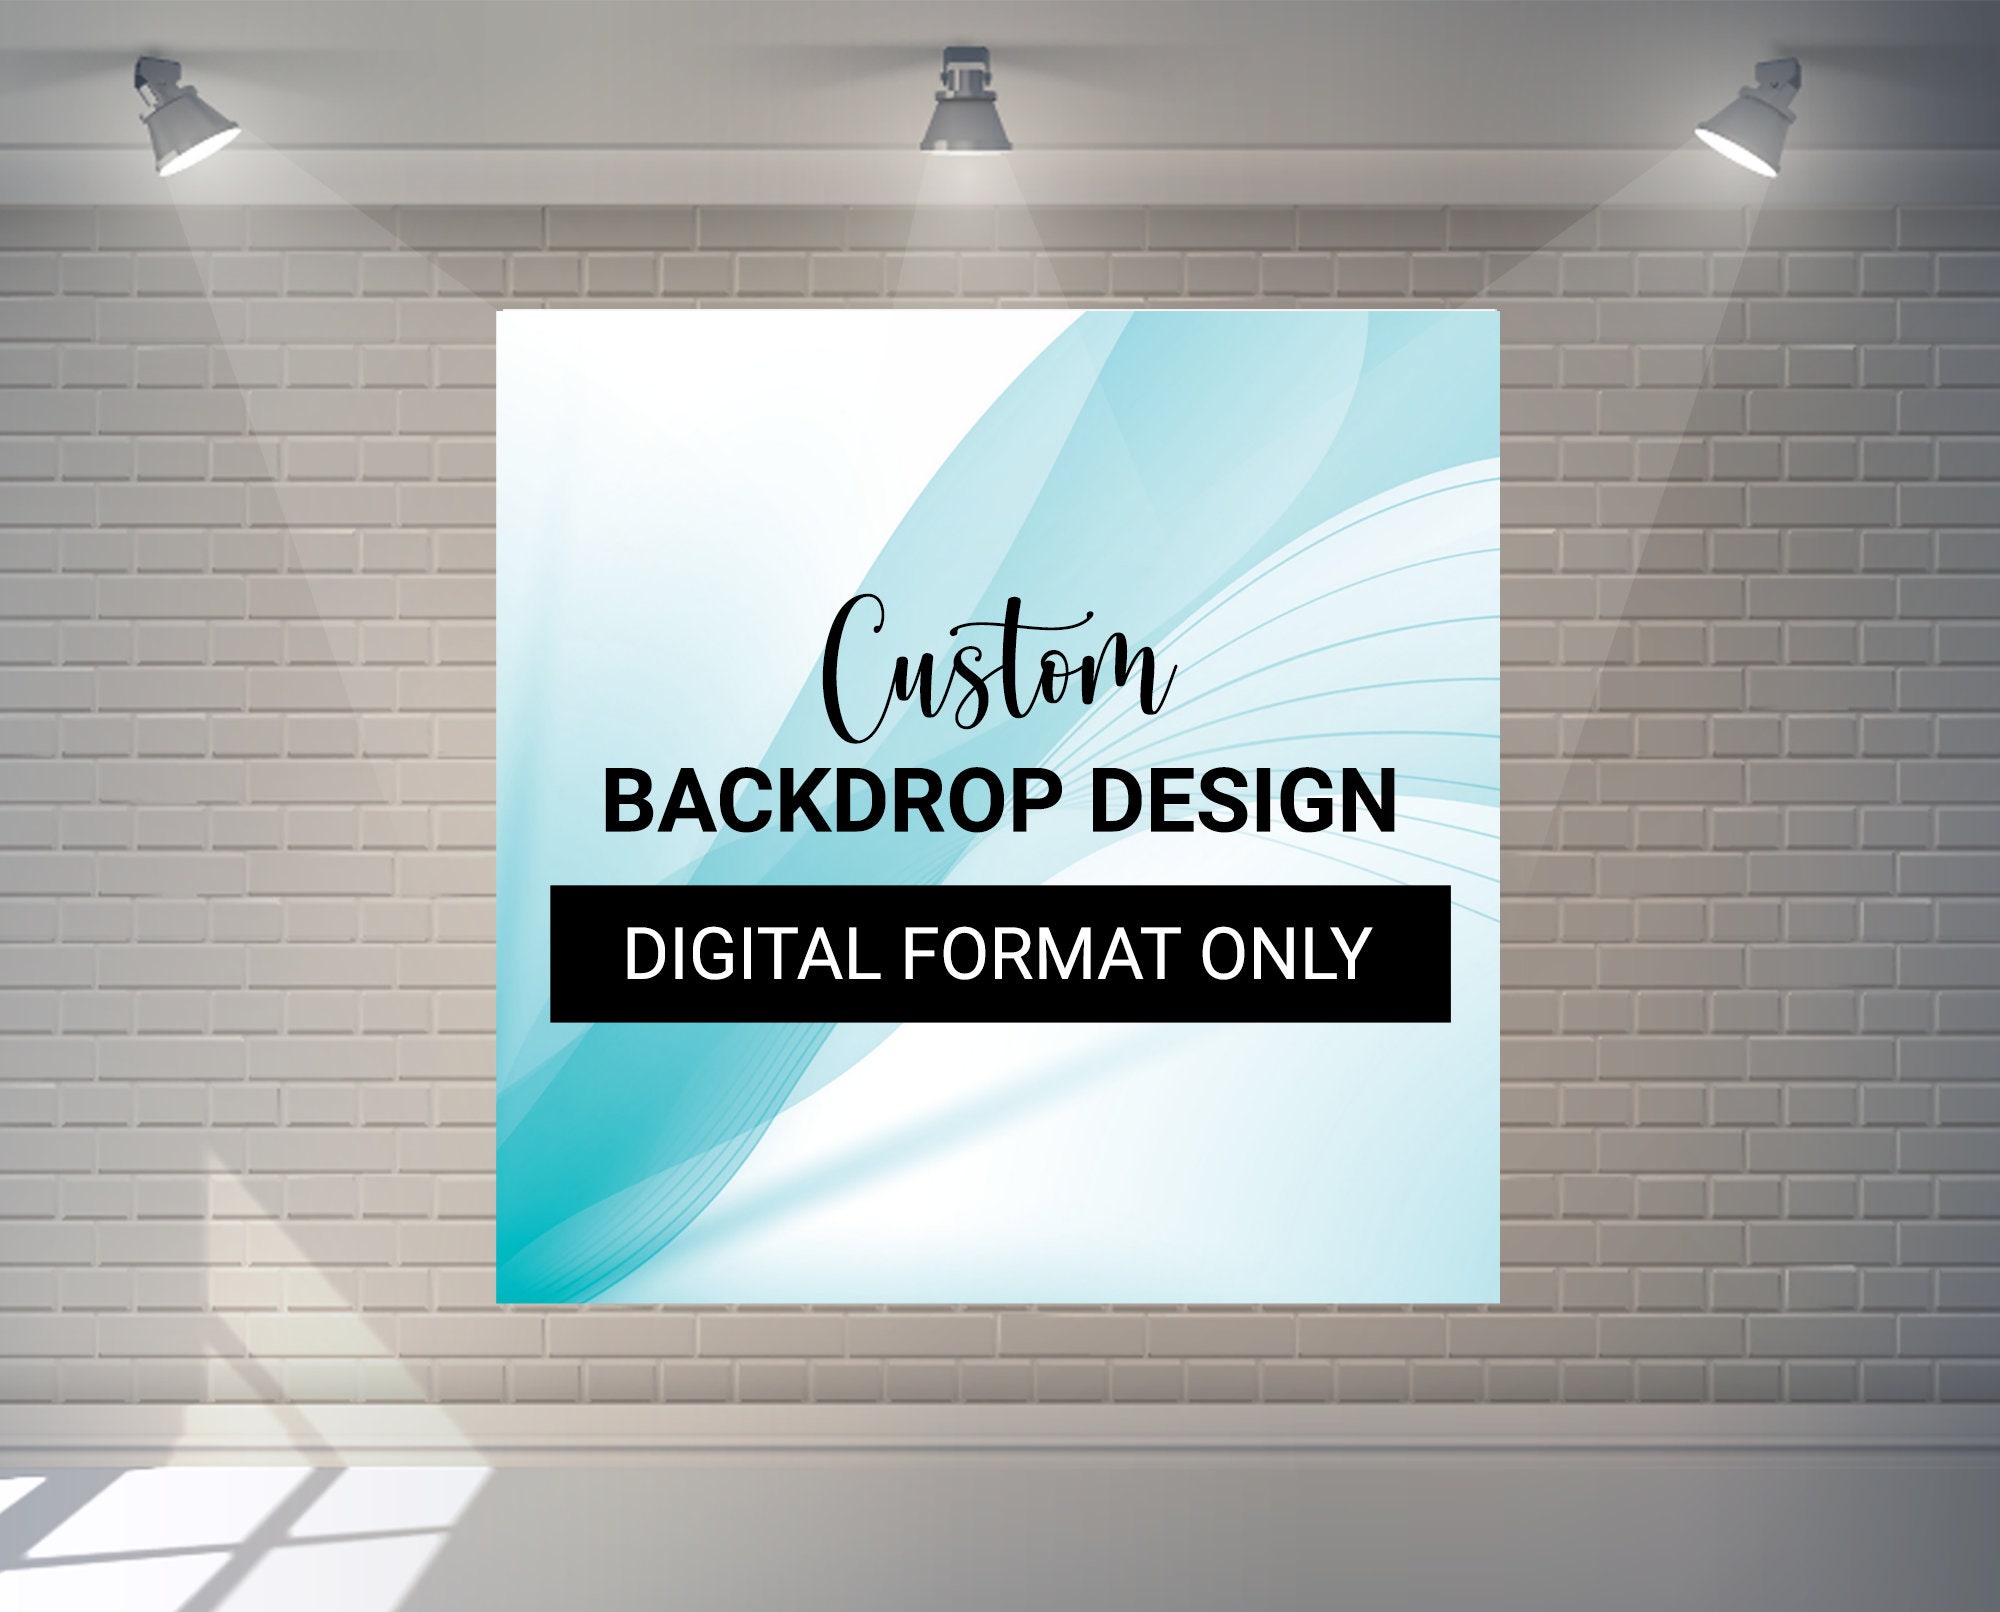 Khám phá sức sáng tạo độc đáo của bạn với Custom Backdrop Design. Với Digital Backdrop, thiết kế sân khấu của bạn sẽ trở nên đầy màu sắc và sống động hơn bao giờ hết. Đừng bỏ lỡ cơ hội để thể hiện bản thân và hấp dẫn khán giả của bạn ngay bây giờ.